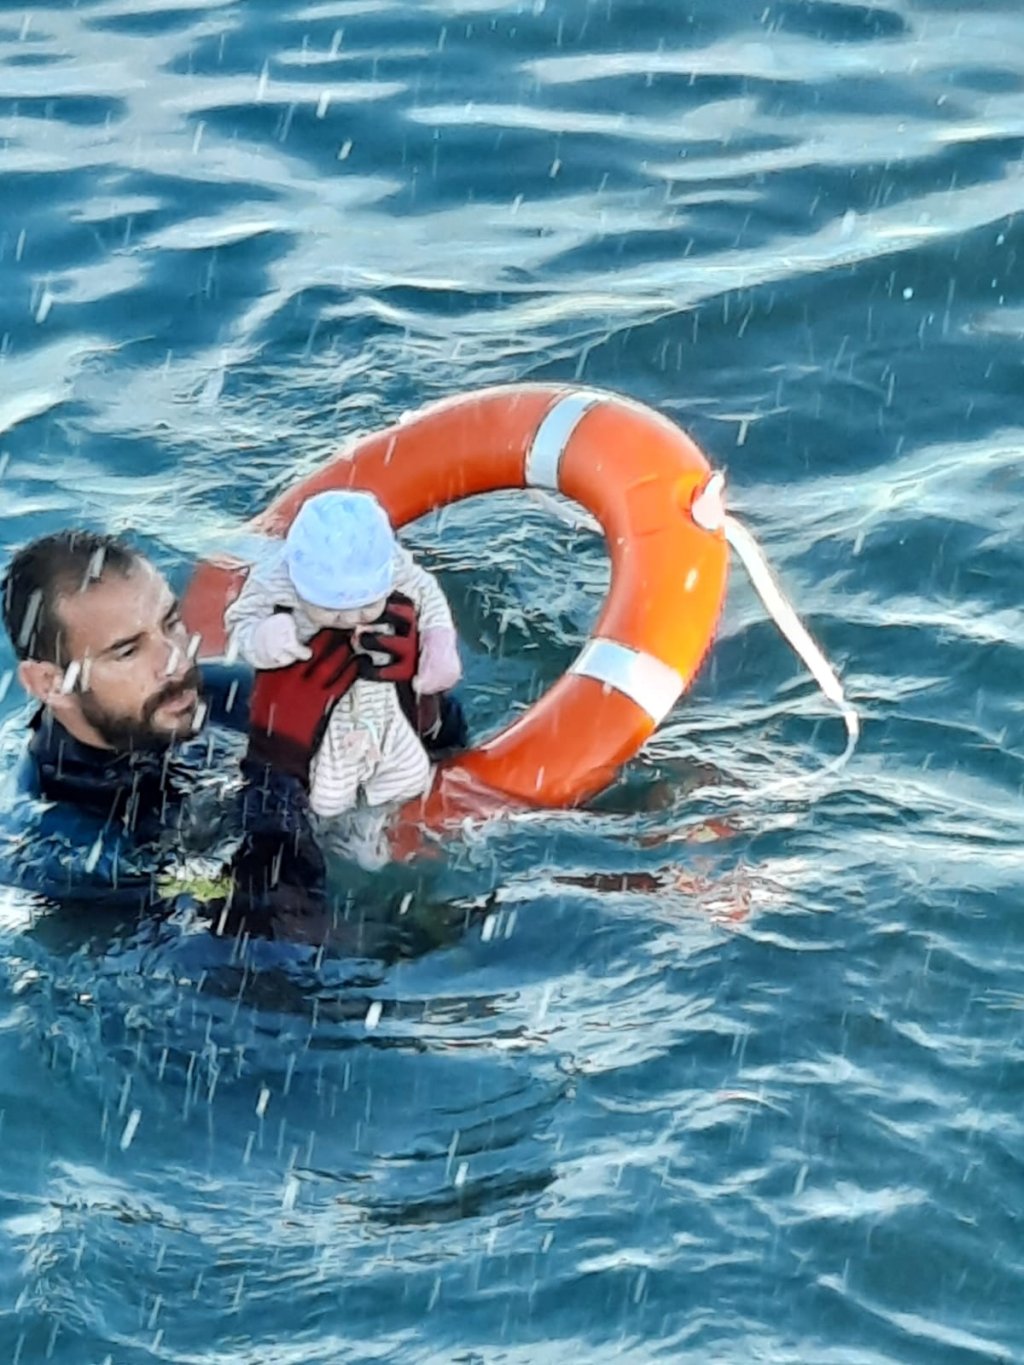 Un nourrisson sorti de l'eau par un sauveteur espagnol. Crédit : Garde civile espagnole